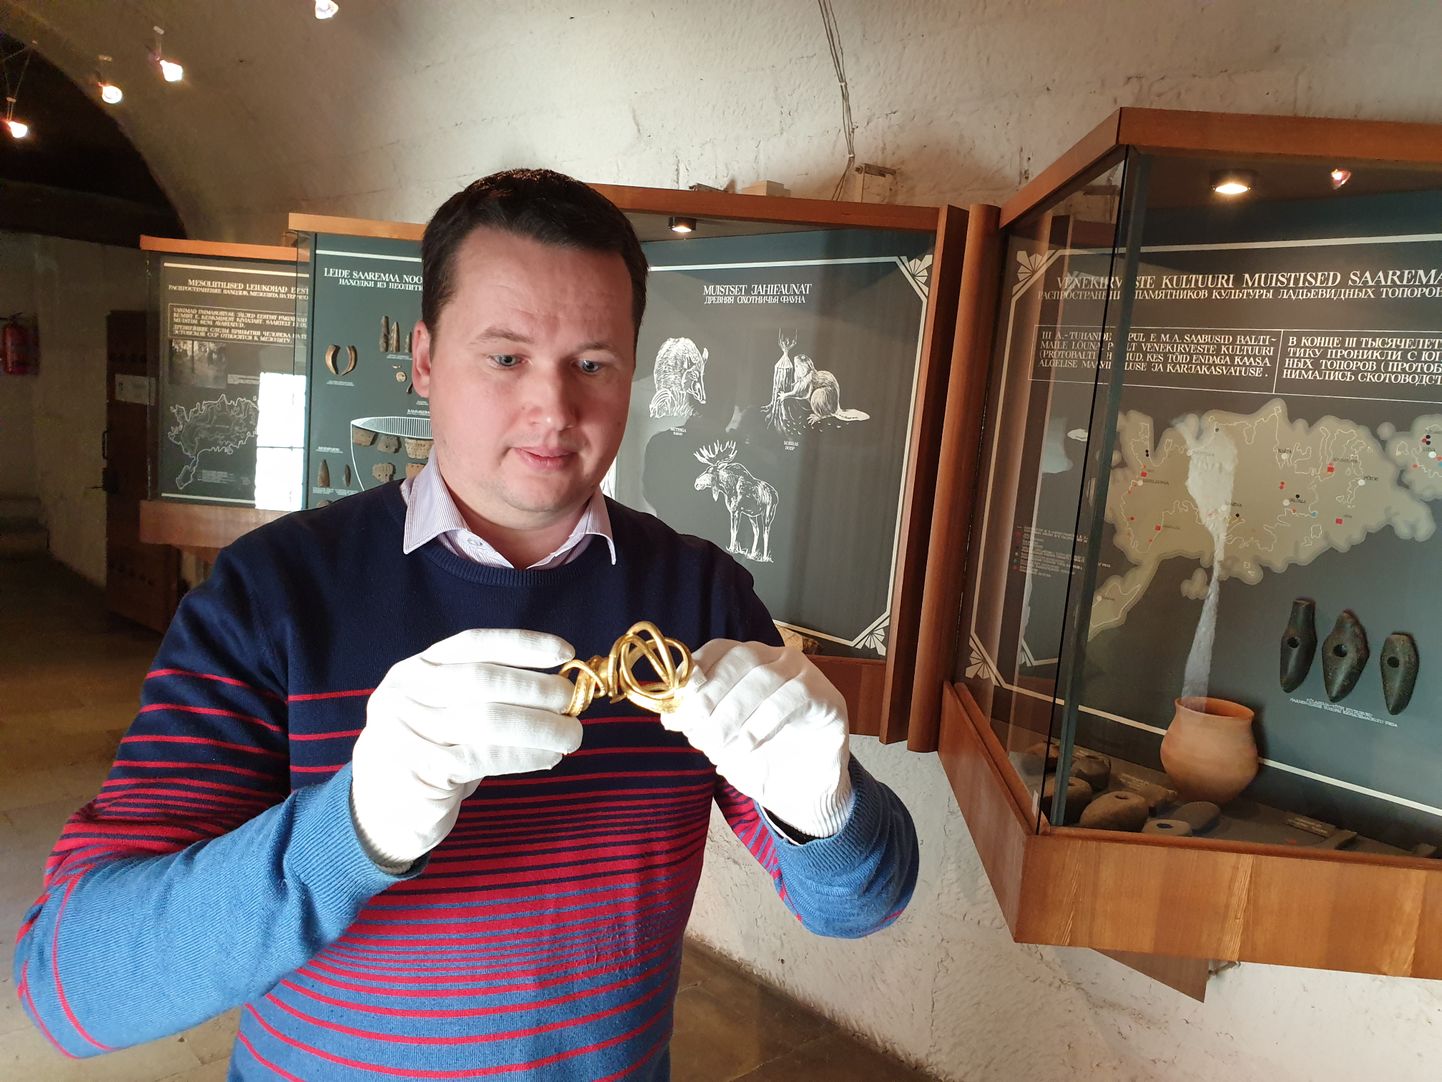 KULDNE MUSEAAL: Saaremaalt leitud väärtuslik kuldvõru on Saaremaa muuseumi peavarahoidja Priit Kivi hoole all.